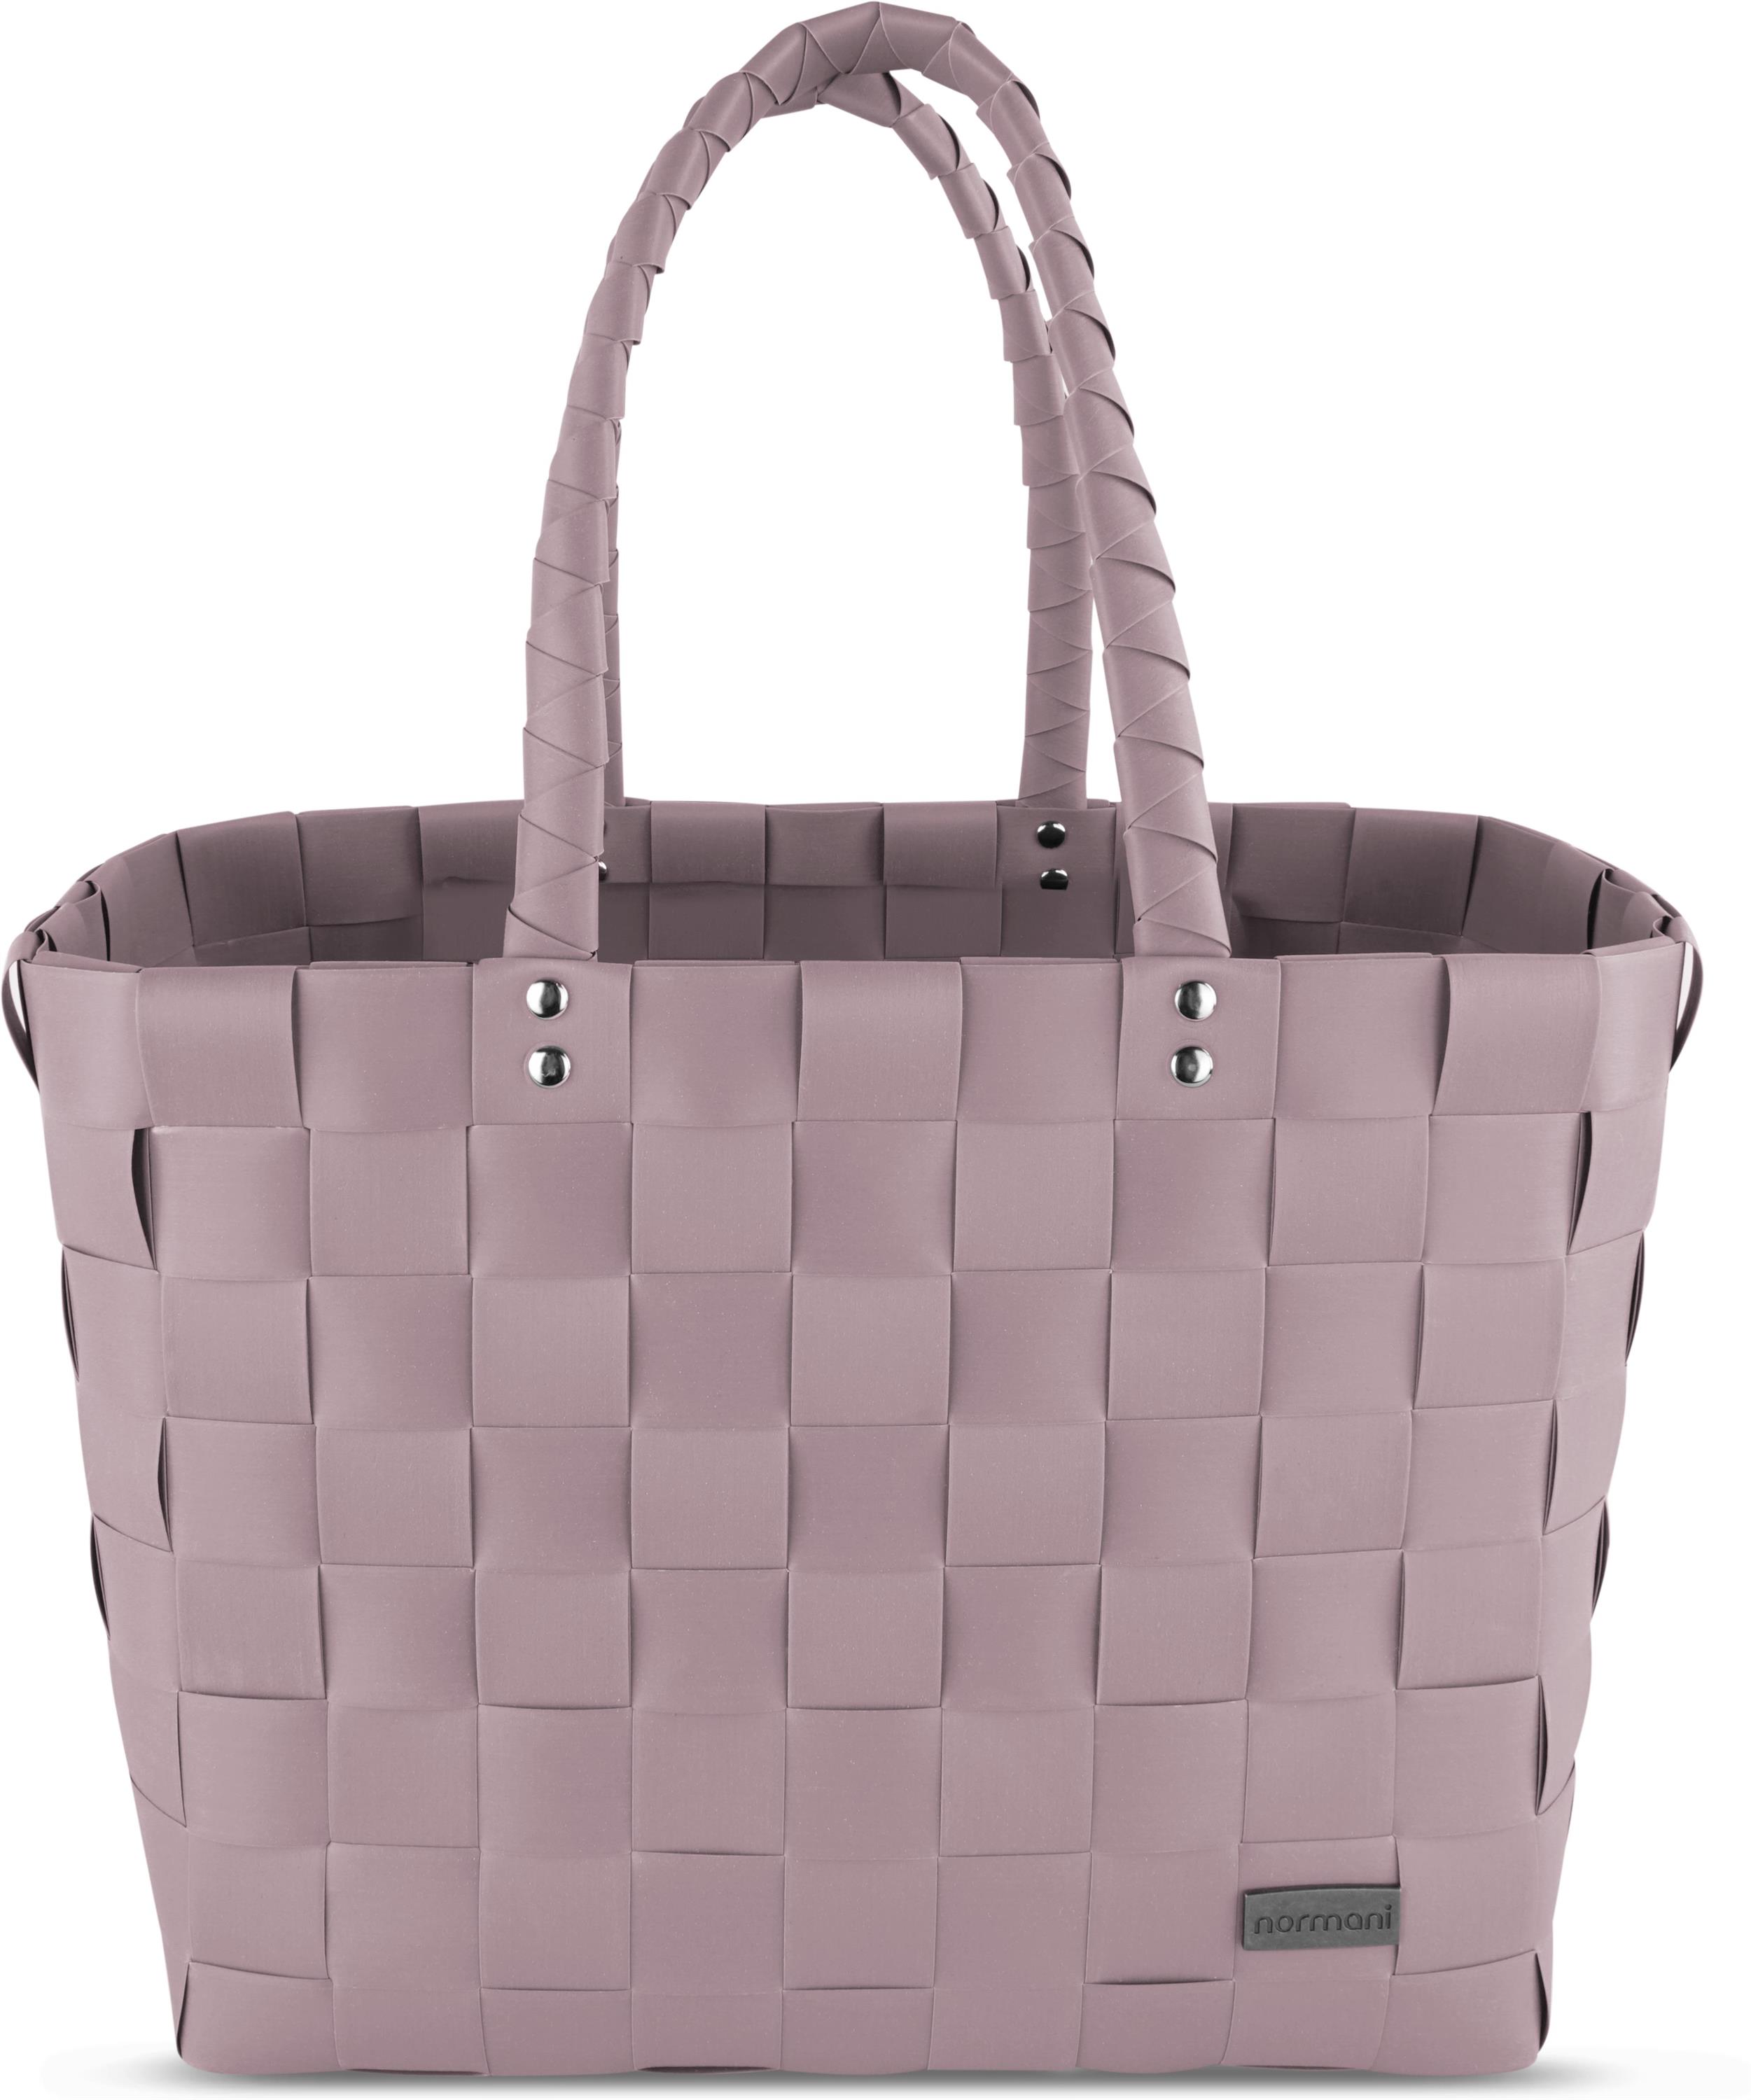 Сумка шоппер normani Einkaufskorb Einkaufstasche aus Kunststoff, цвет Dusty Pink